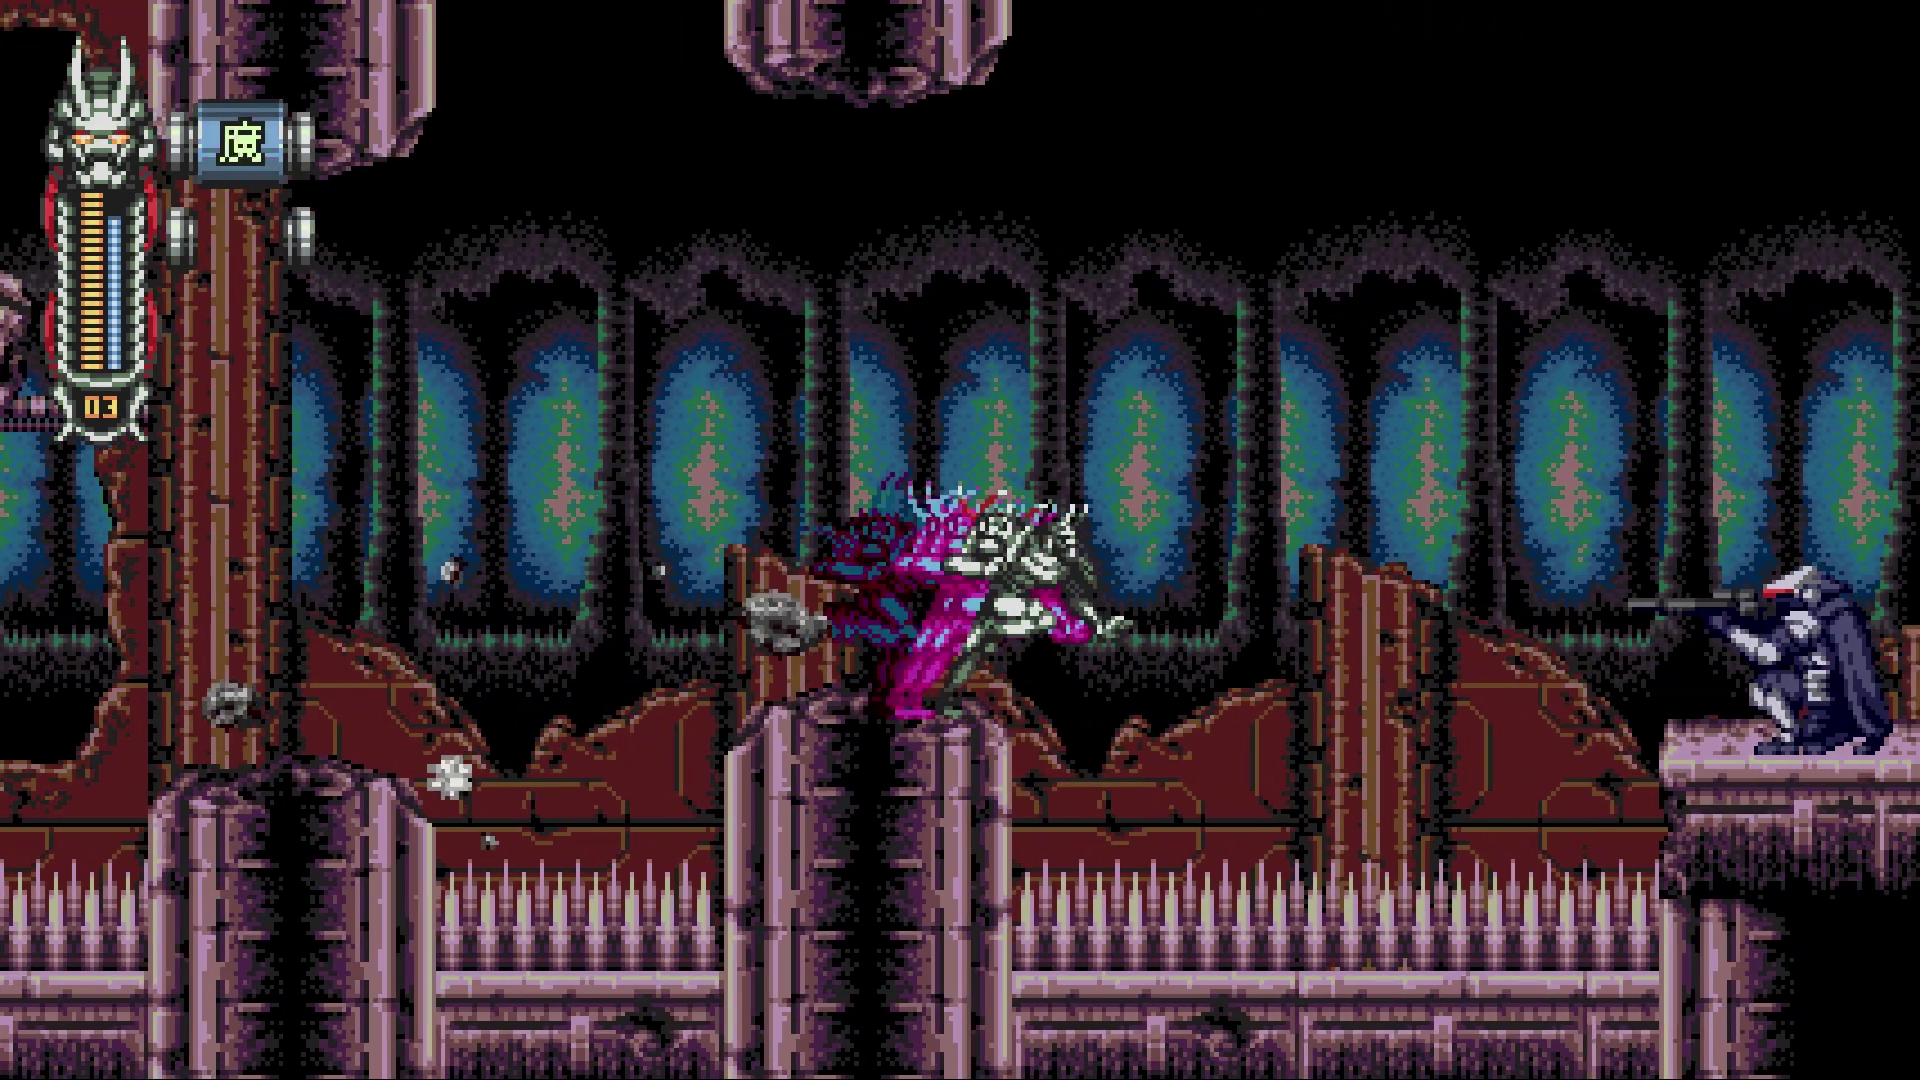 An image of 16-bit style action platformer Vengeful Guardian: Moonrider